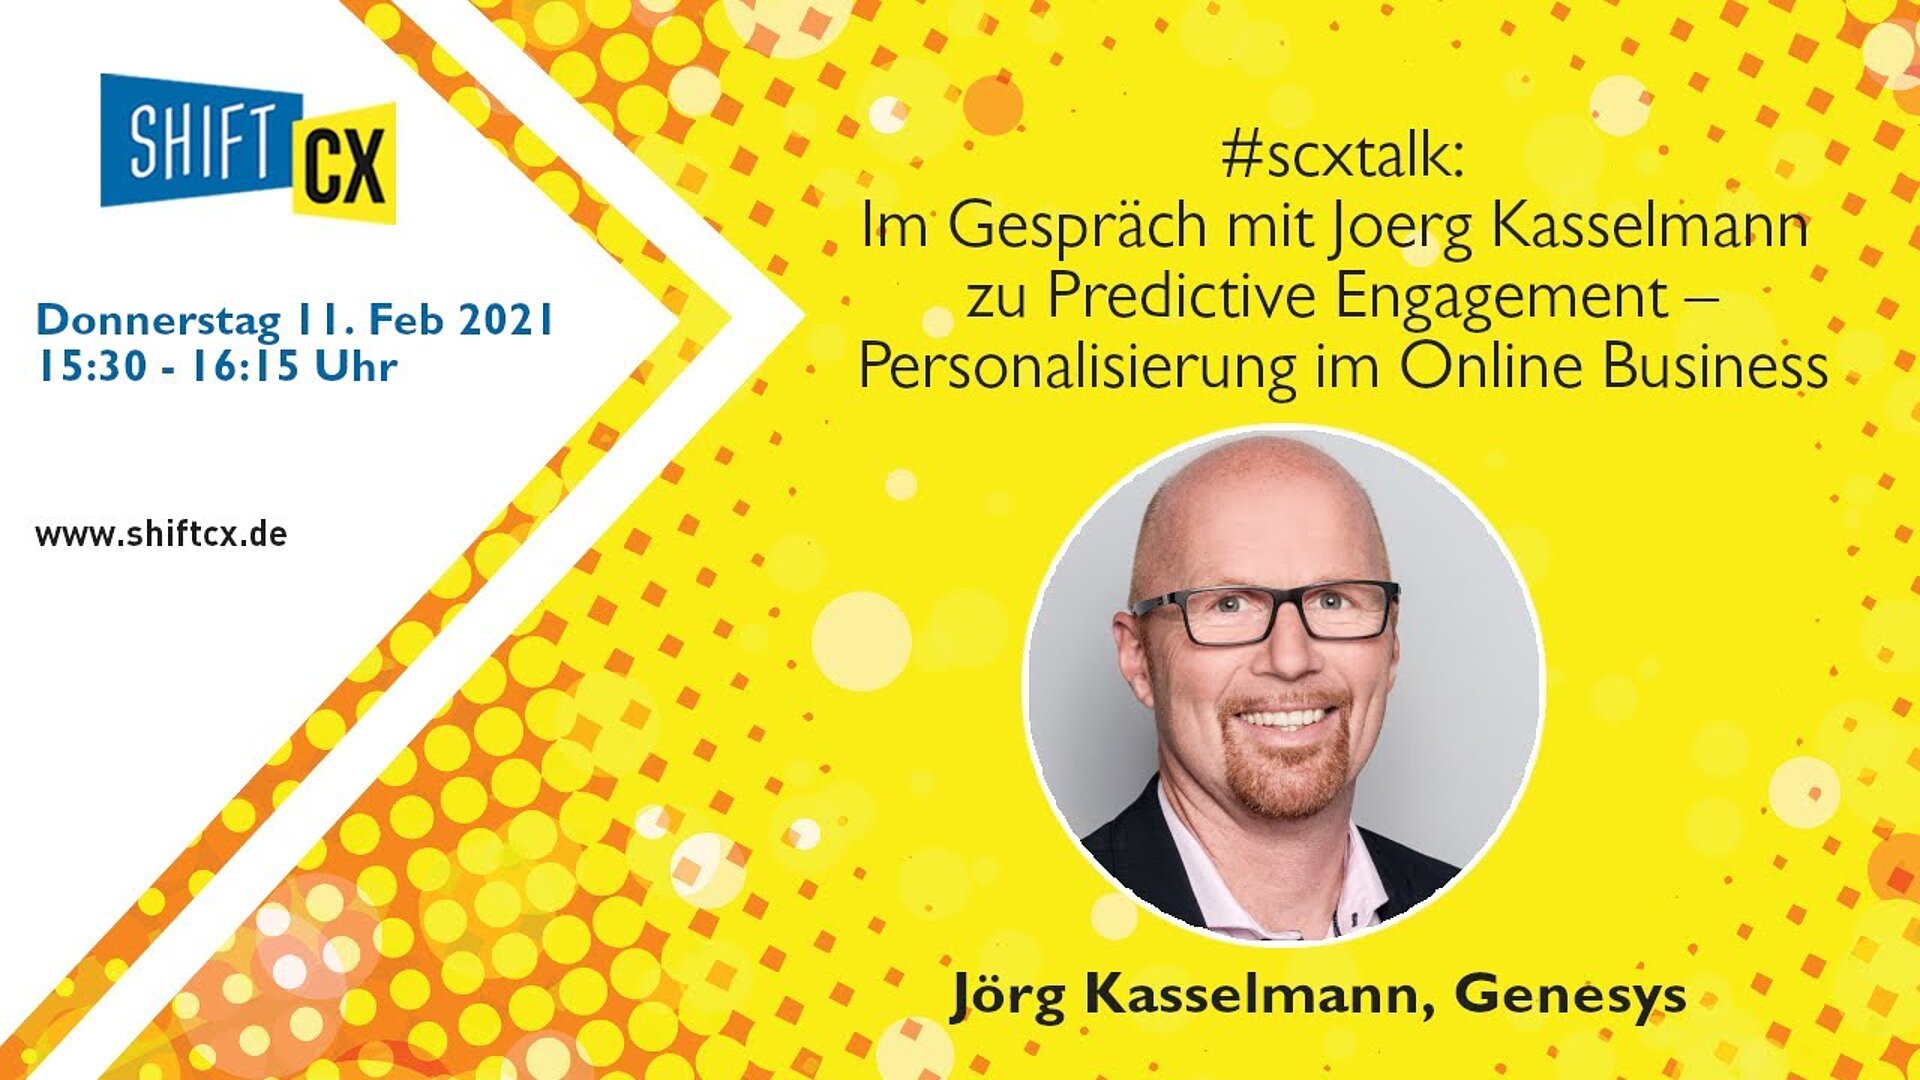 Im Gespräch mit Joerg Kasselmann zu Predictive Engagement – Personalisierung im Online Business